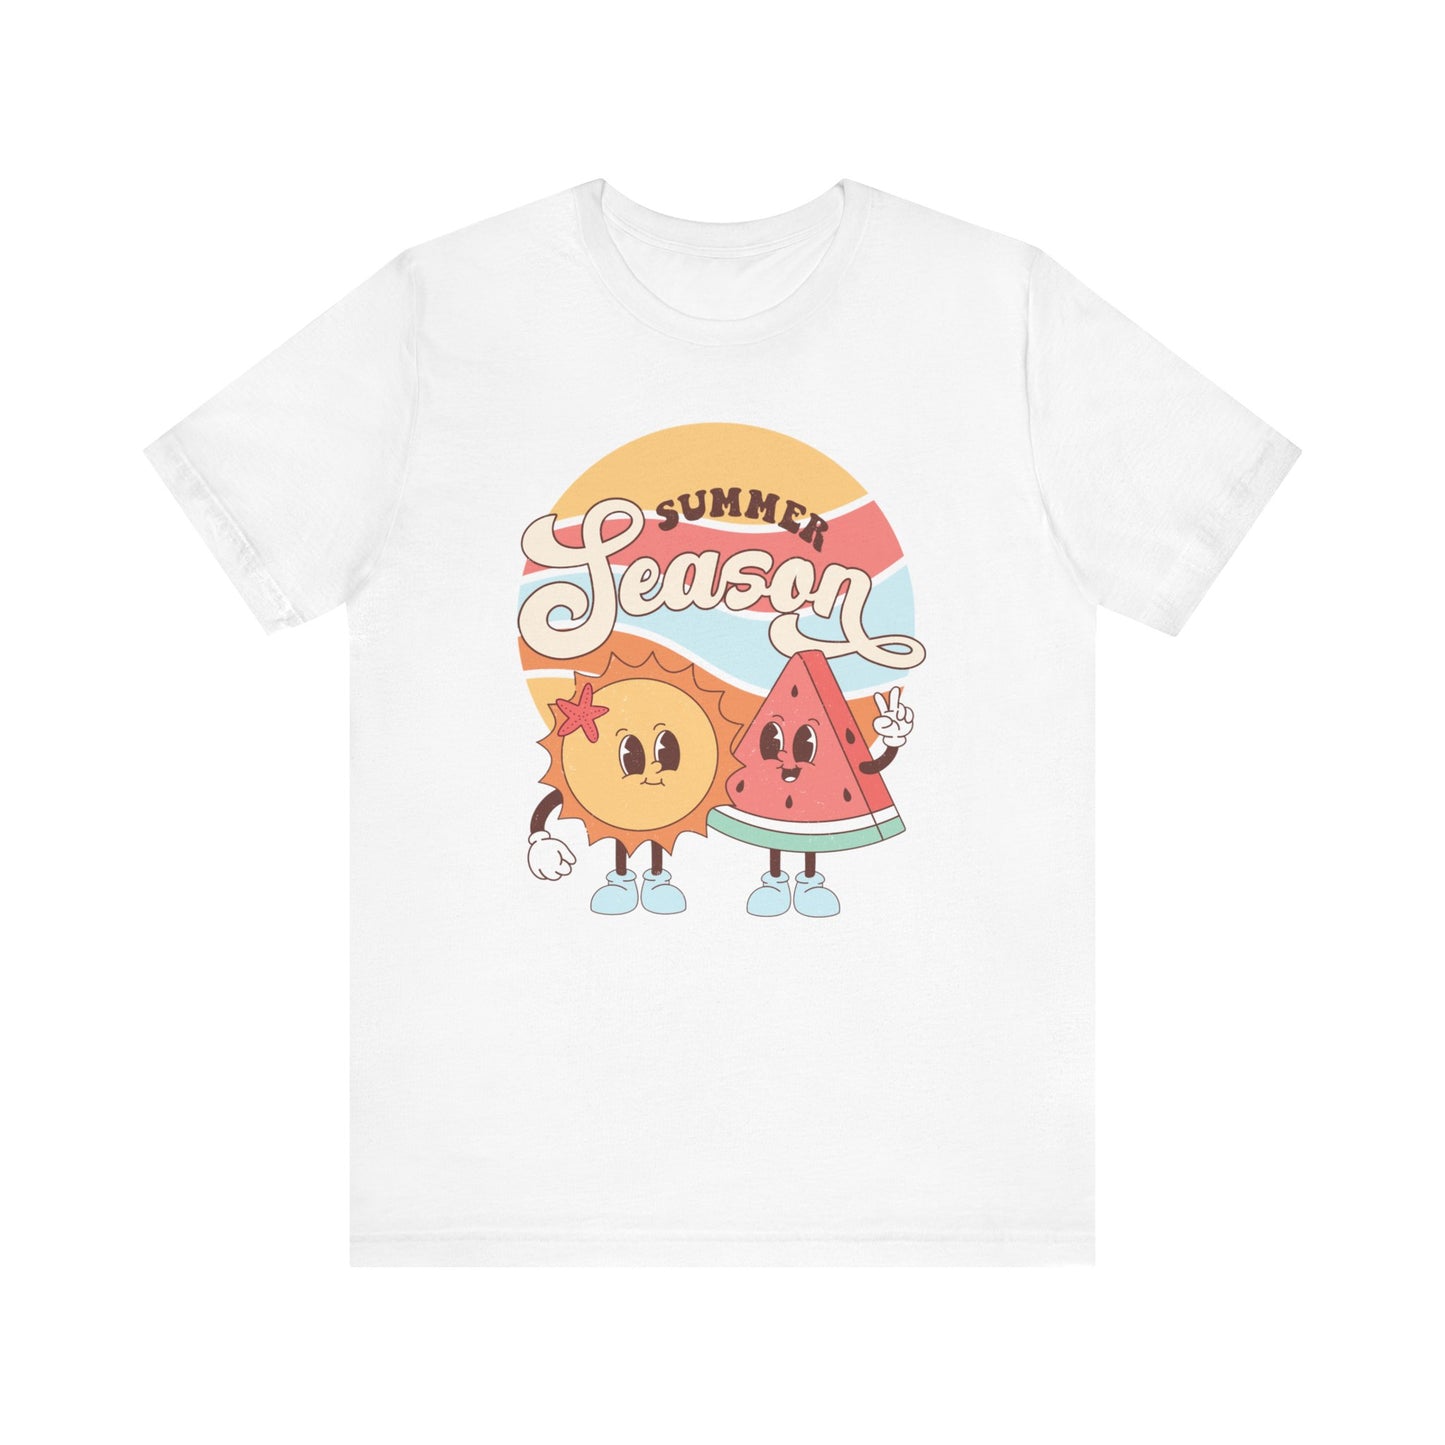 Summer Season Fun T-Shirt, Retro Sun and Watermelon Tee, Cute Cartoon Beachwear, Unisex Graphic Shirt